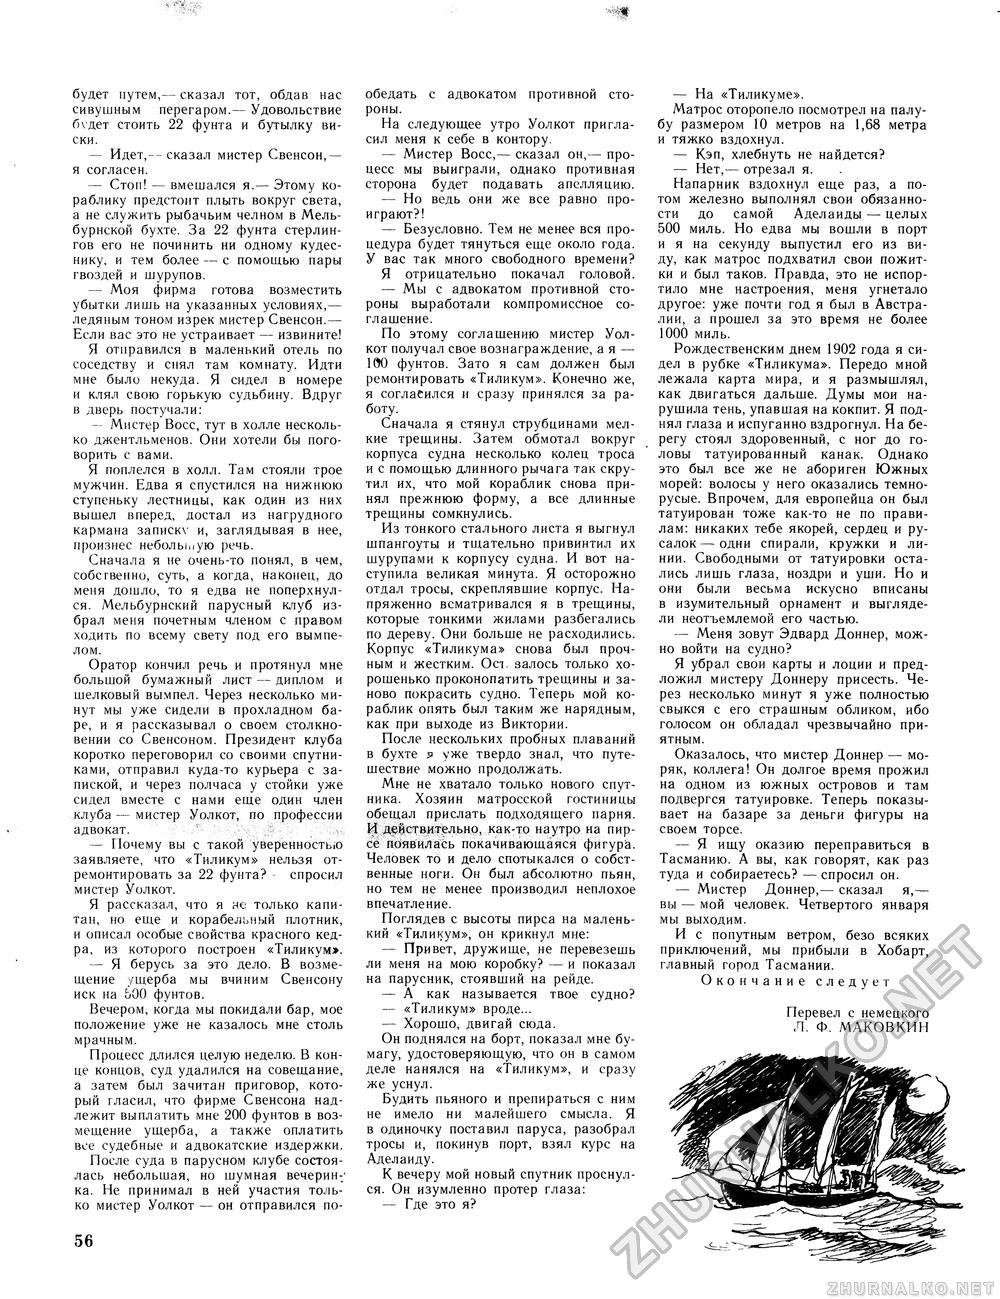 Вокруг света 1982-09, страница 58